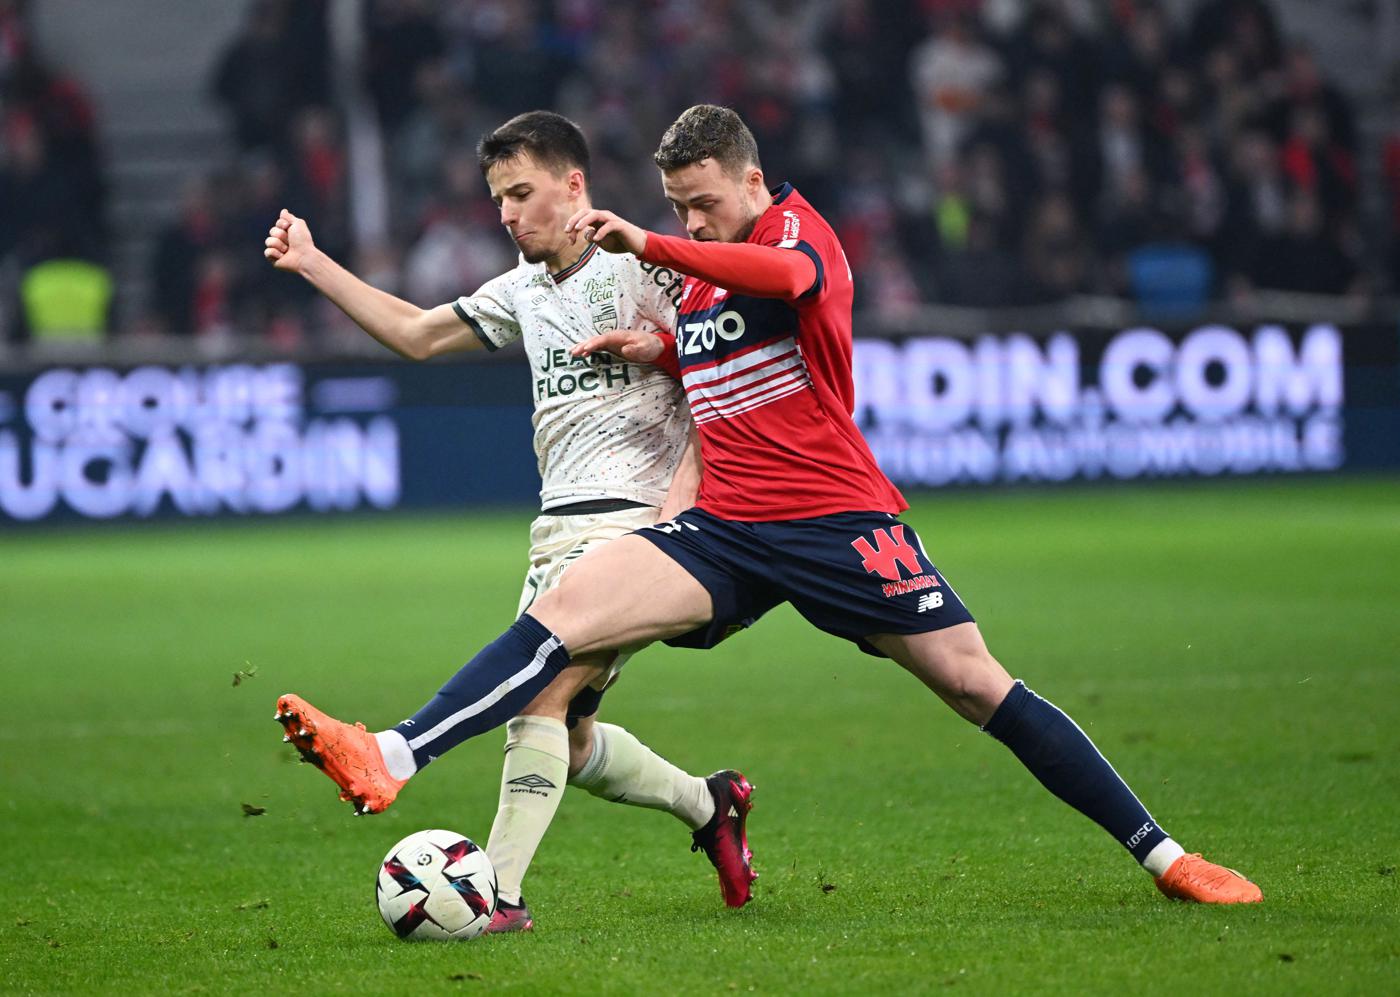 Lille - Lorient - 3:1. Französische Meisterschaft, 29. Runde. Spielbericht, Statistiken